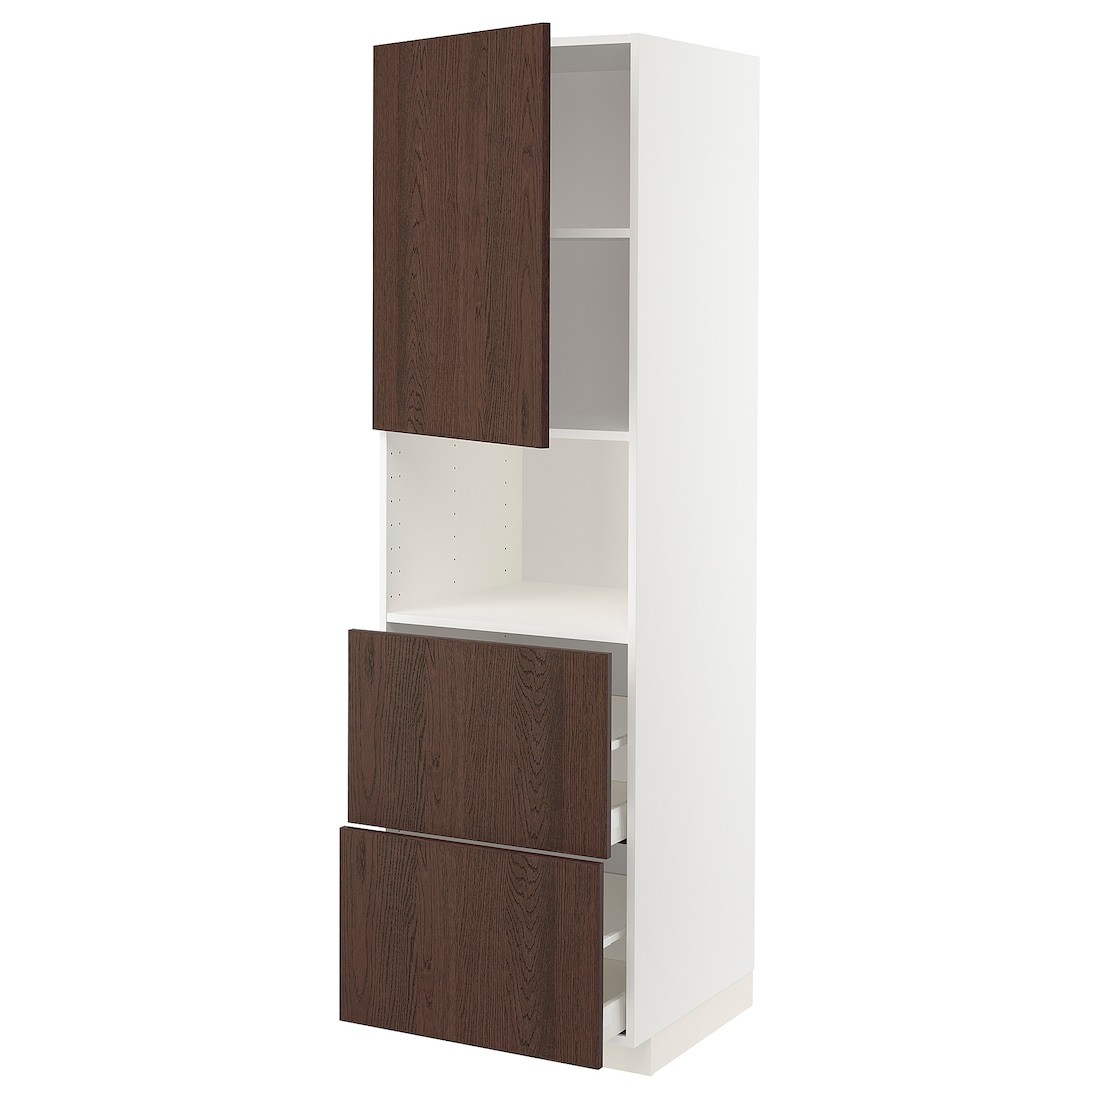 METOD МЕТОД / MAXIMERA МАКСИМЕРА Высокий шкаф для микроволновки с дверями / 2 ящика, белый / Sinarp коричневый, 60x60x200 см